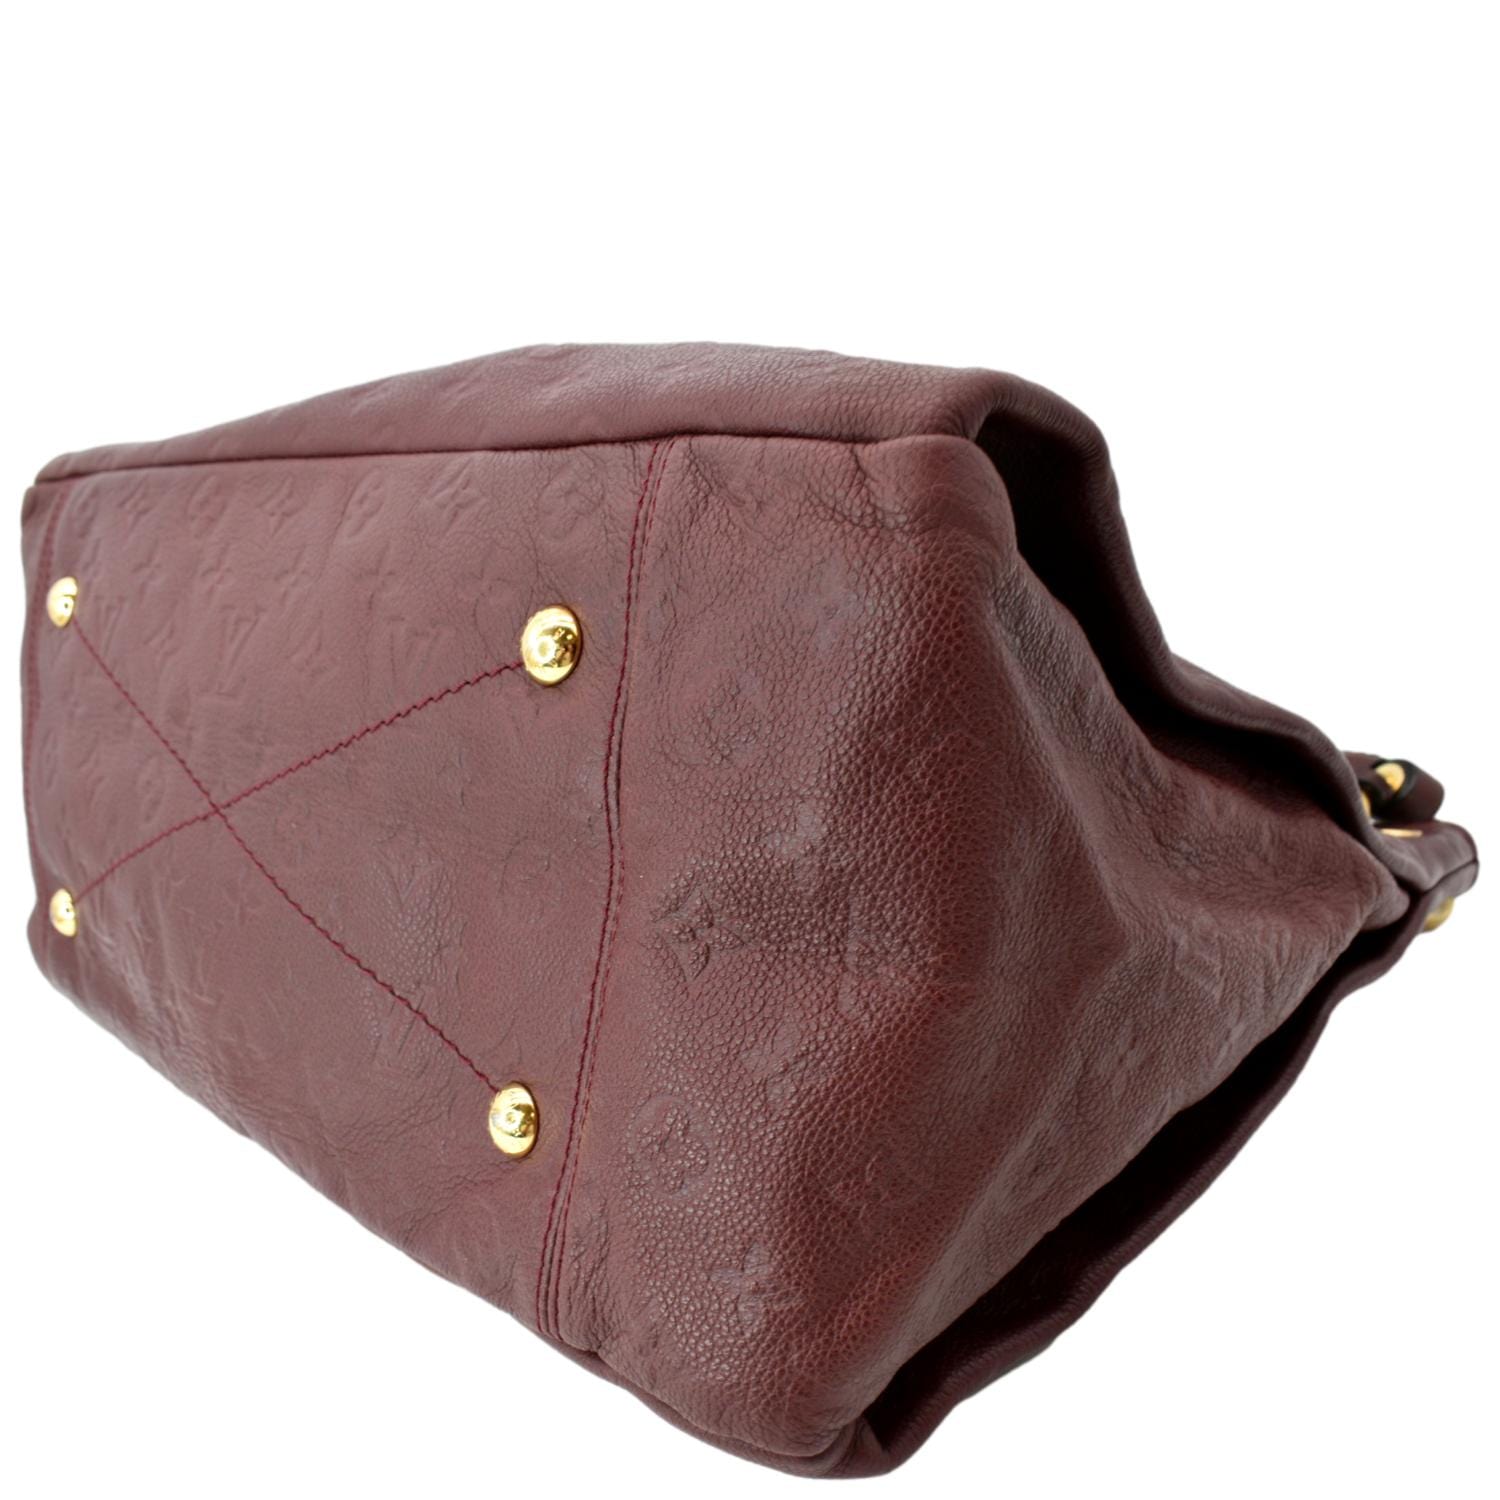 Authentic Louis Vuitton Empreinte Artsy MM in Red Hobo Shoulder Handbag